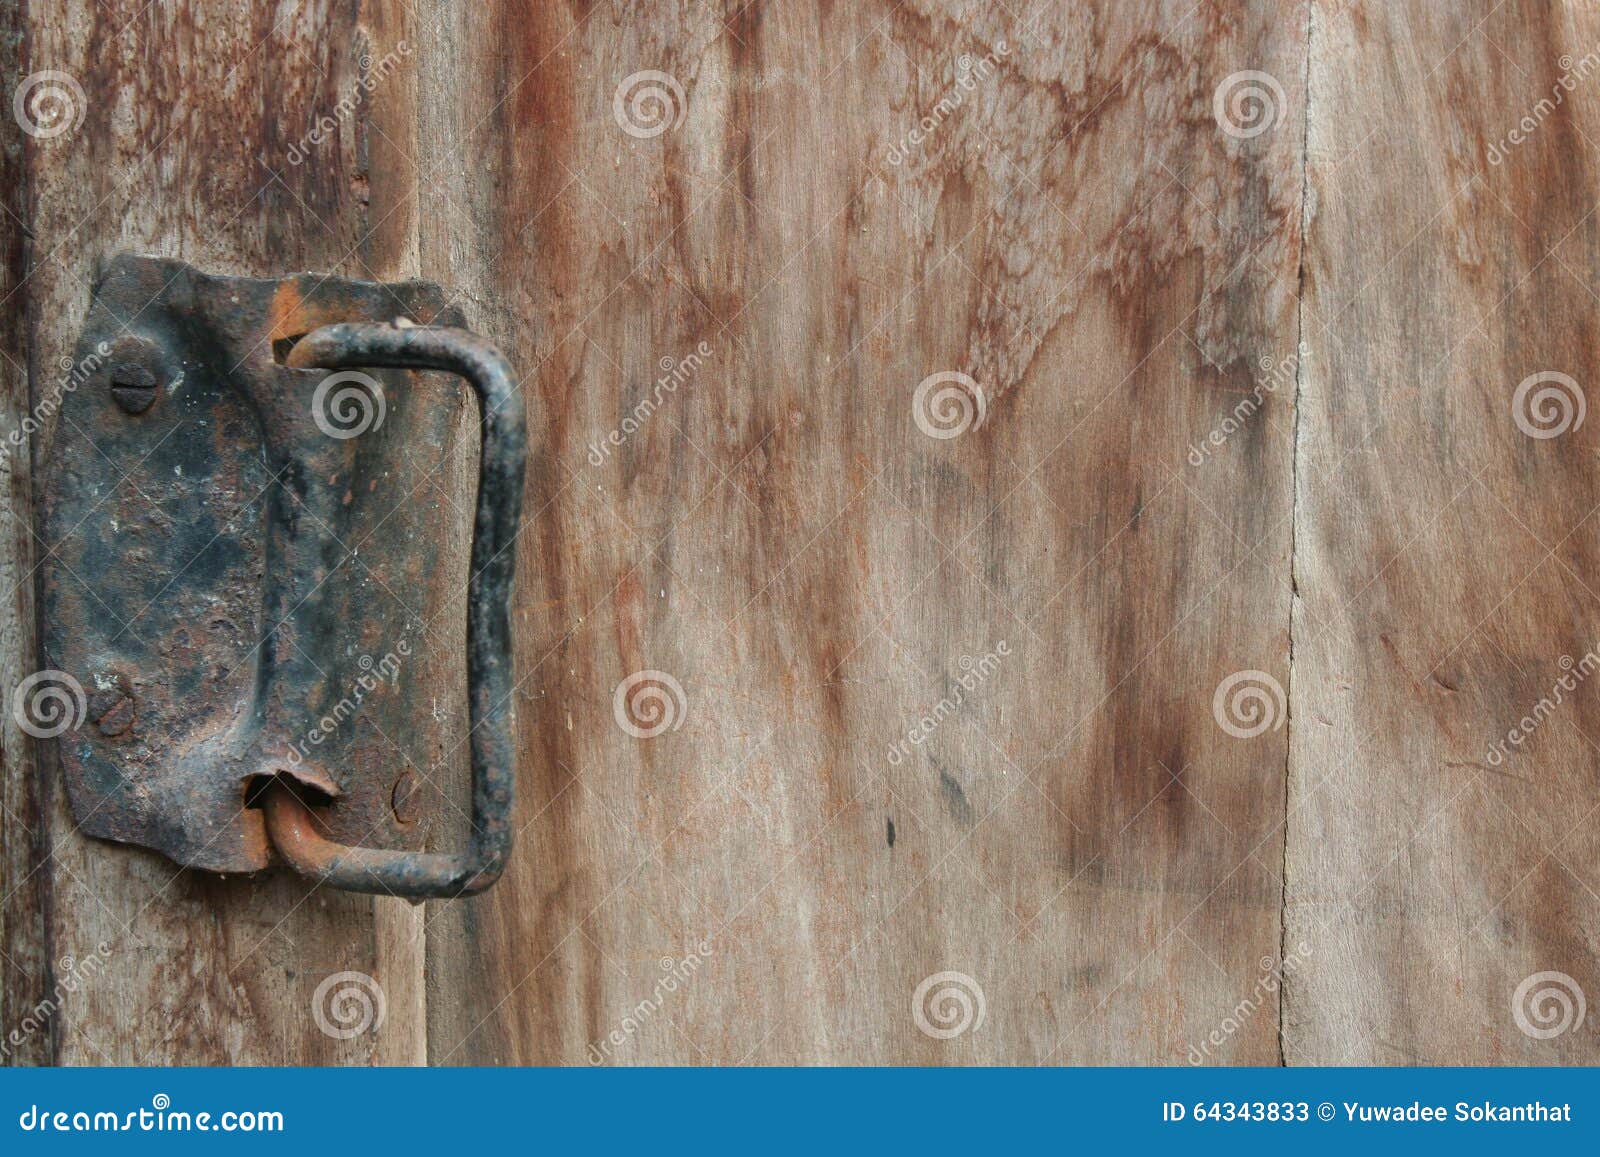 Wooden door rust фото 50